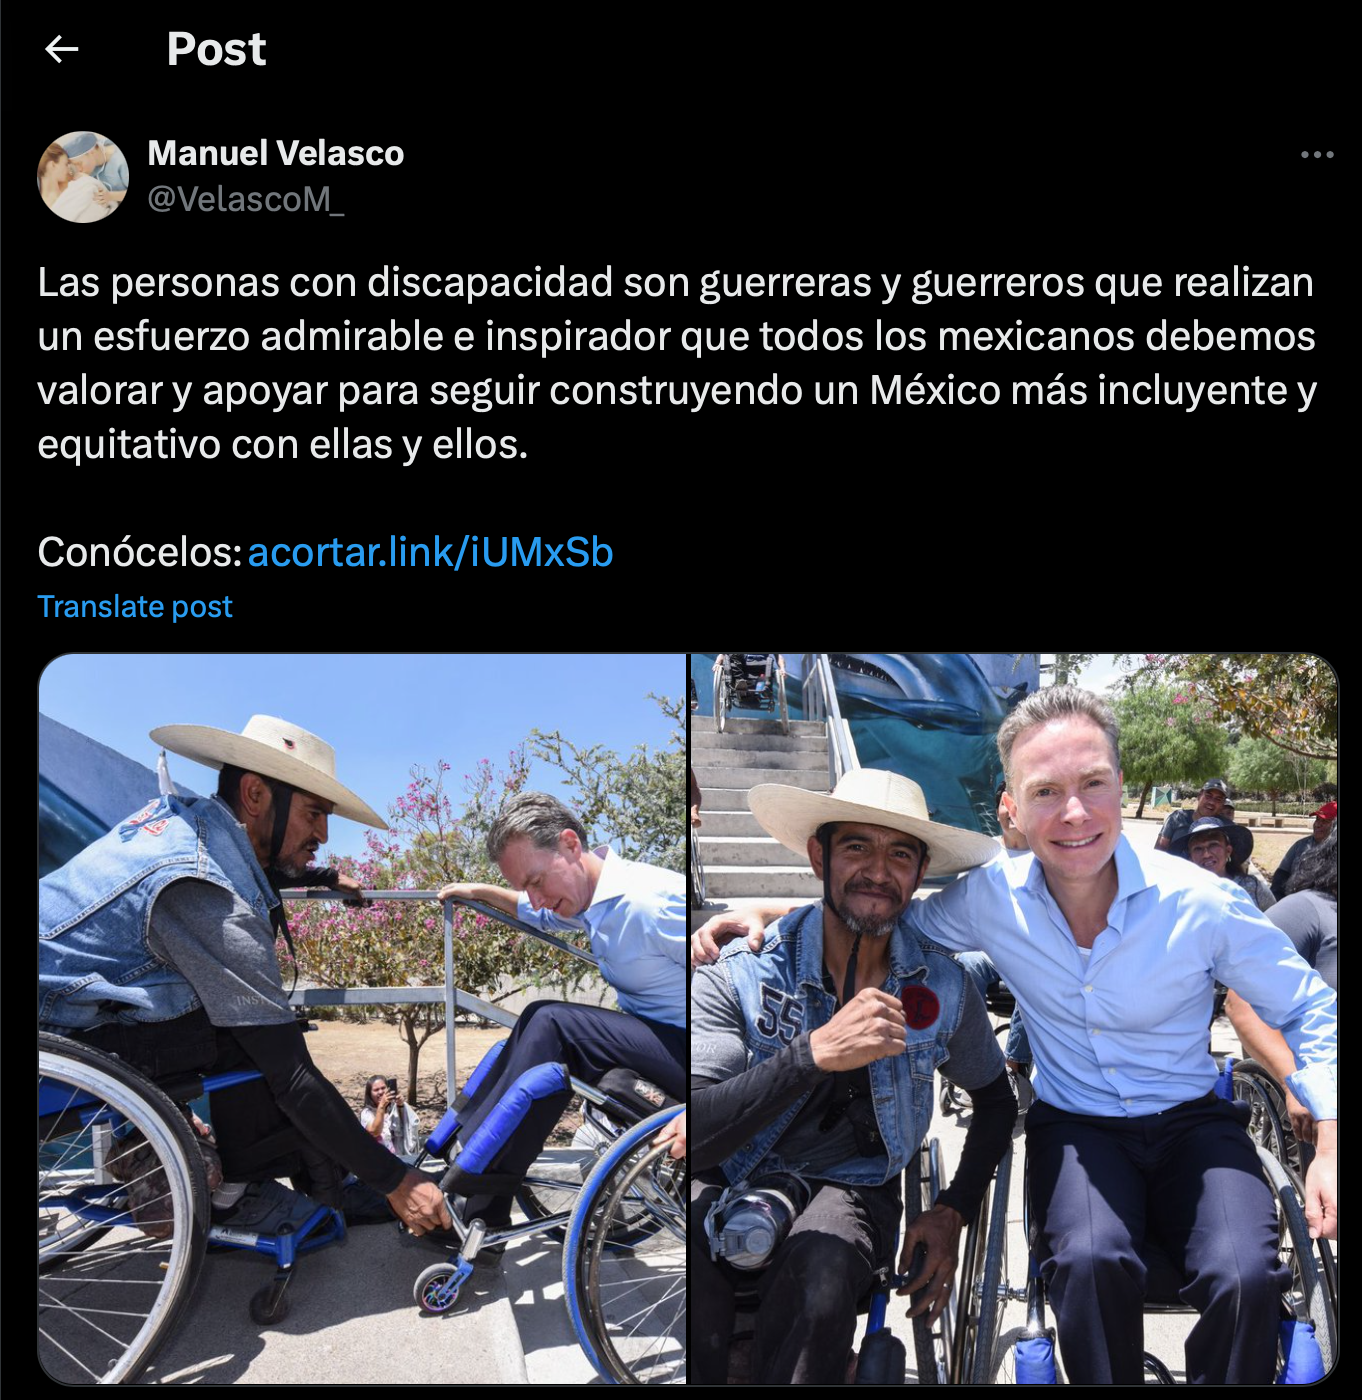 Captura de pantalla del tweet de Manuel Velasco mencionado. Además del texto, incluye dos imágenes: una de Manuel Velasco probando una silla de ruedas, y otra abrazando a una persona usuaria de silla de ruedas.